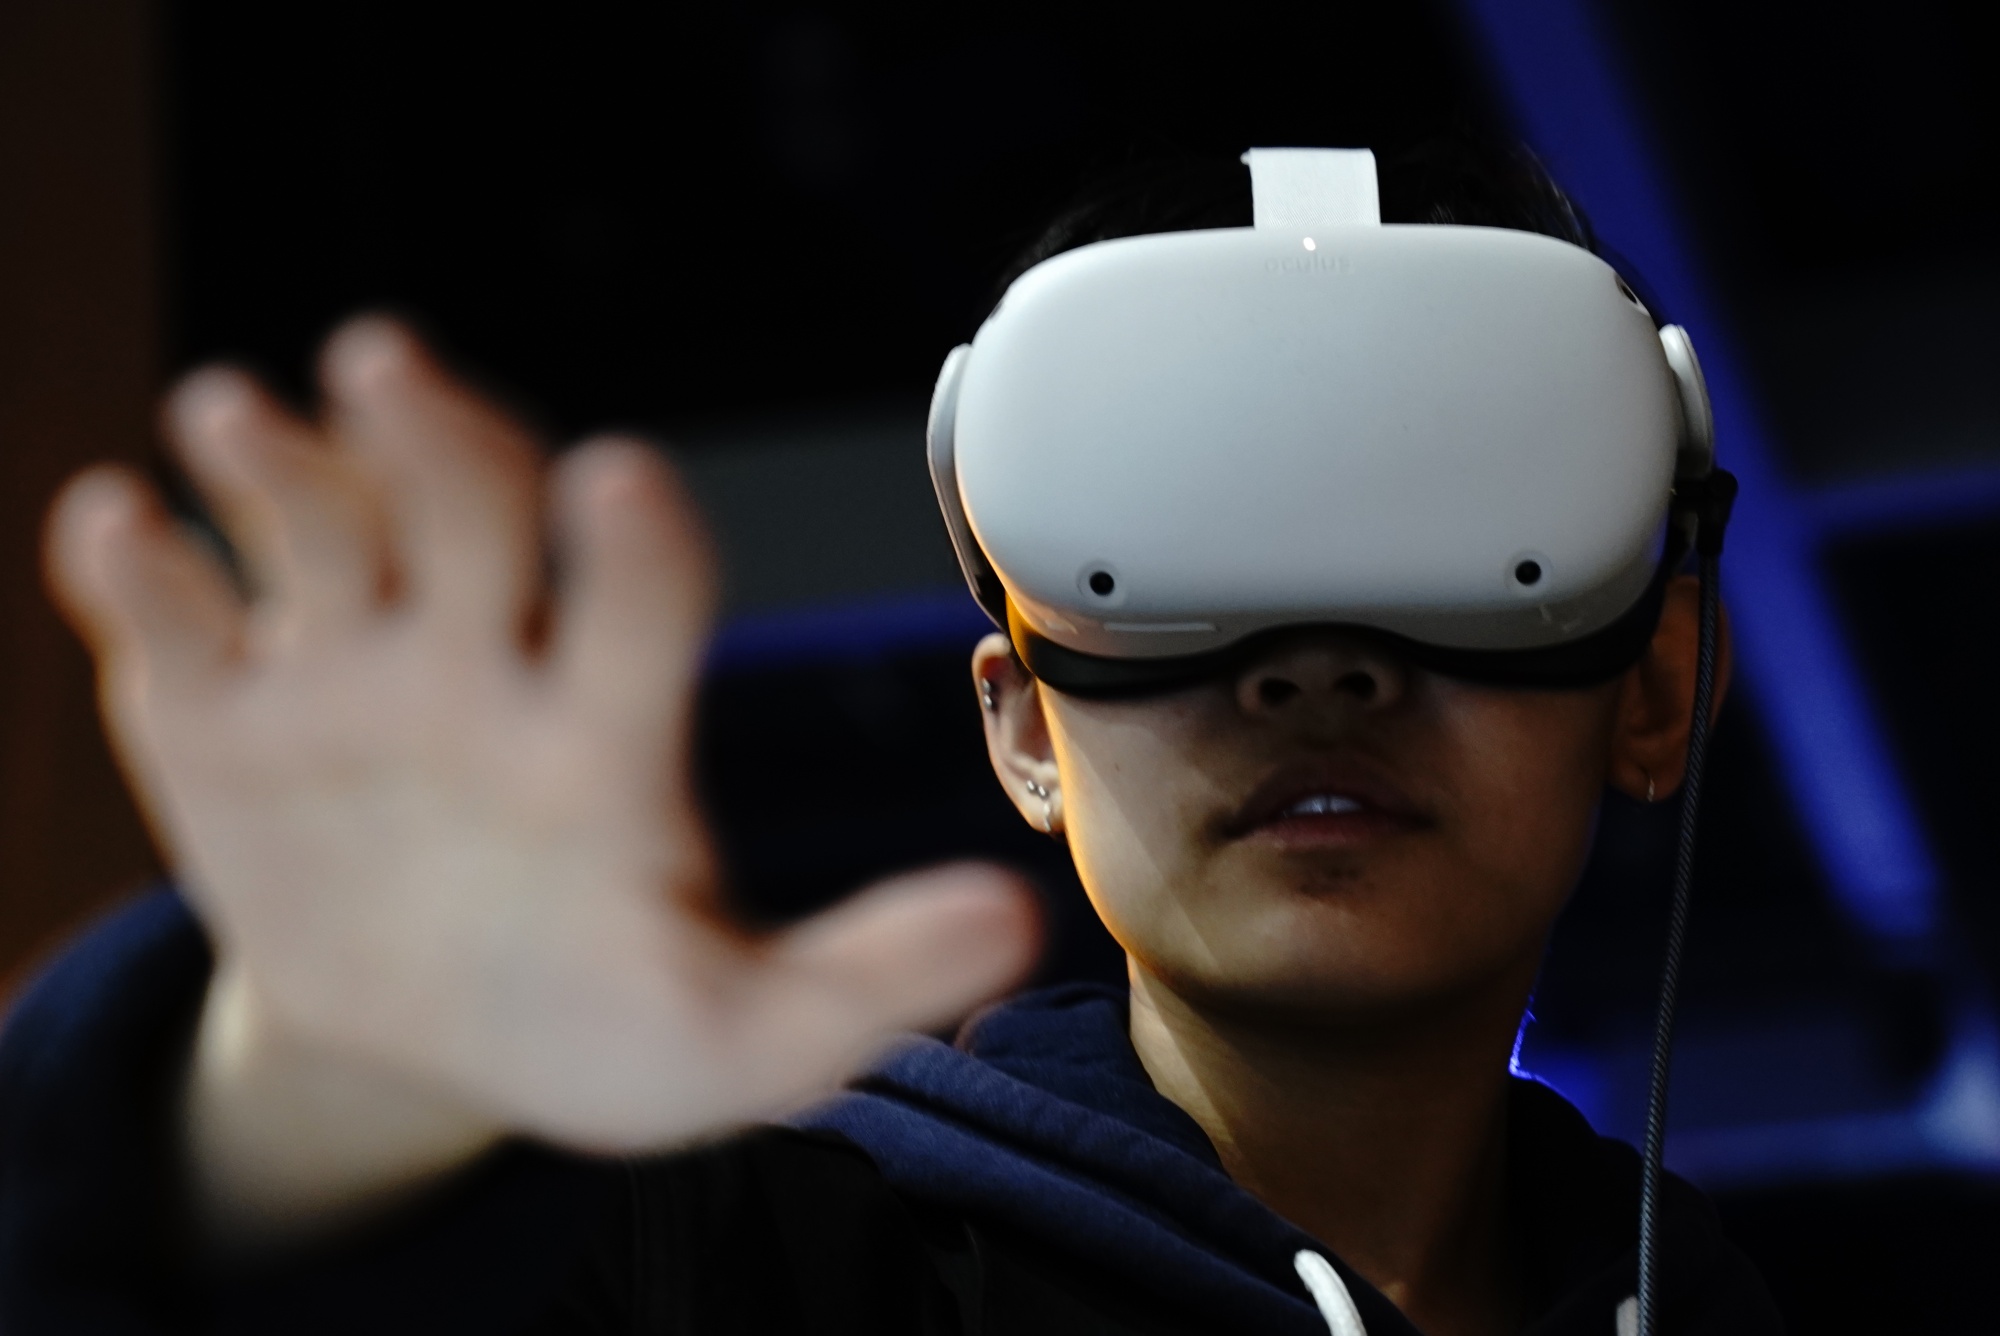 图片展示一位戴着虚拟现实头盔的人，伸出手掌，似乎在体验VR技术带来的互动感觉，背景模糊，聚焦在此人上。